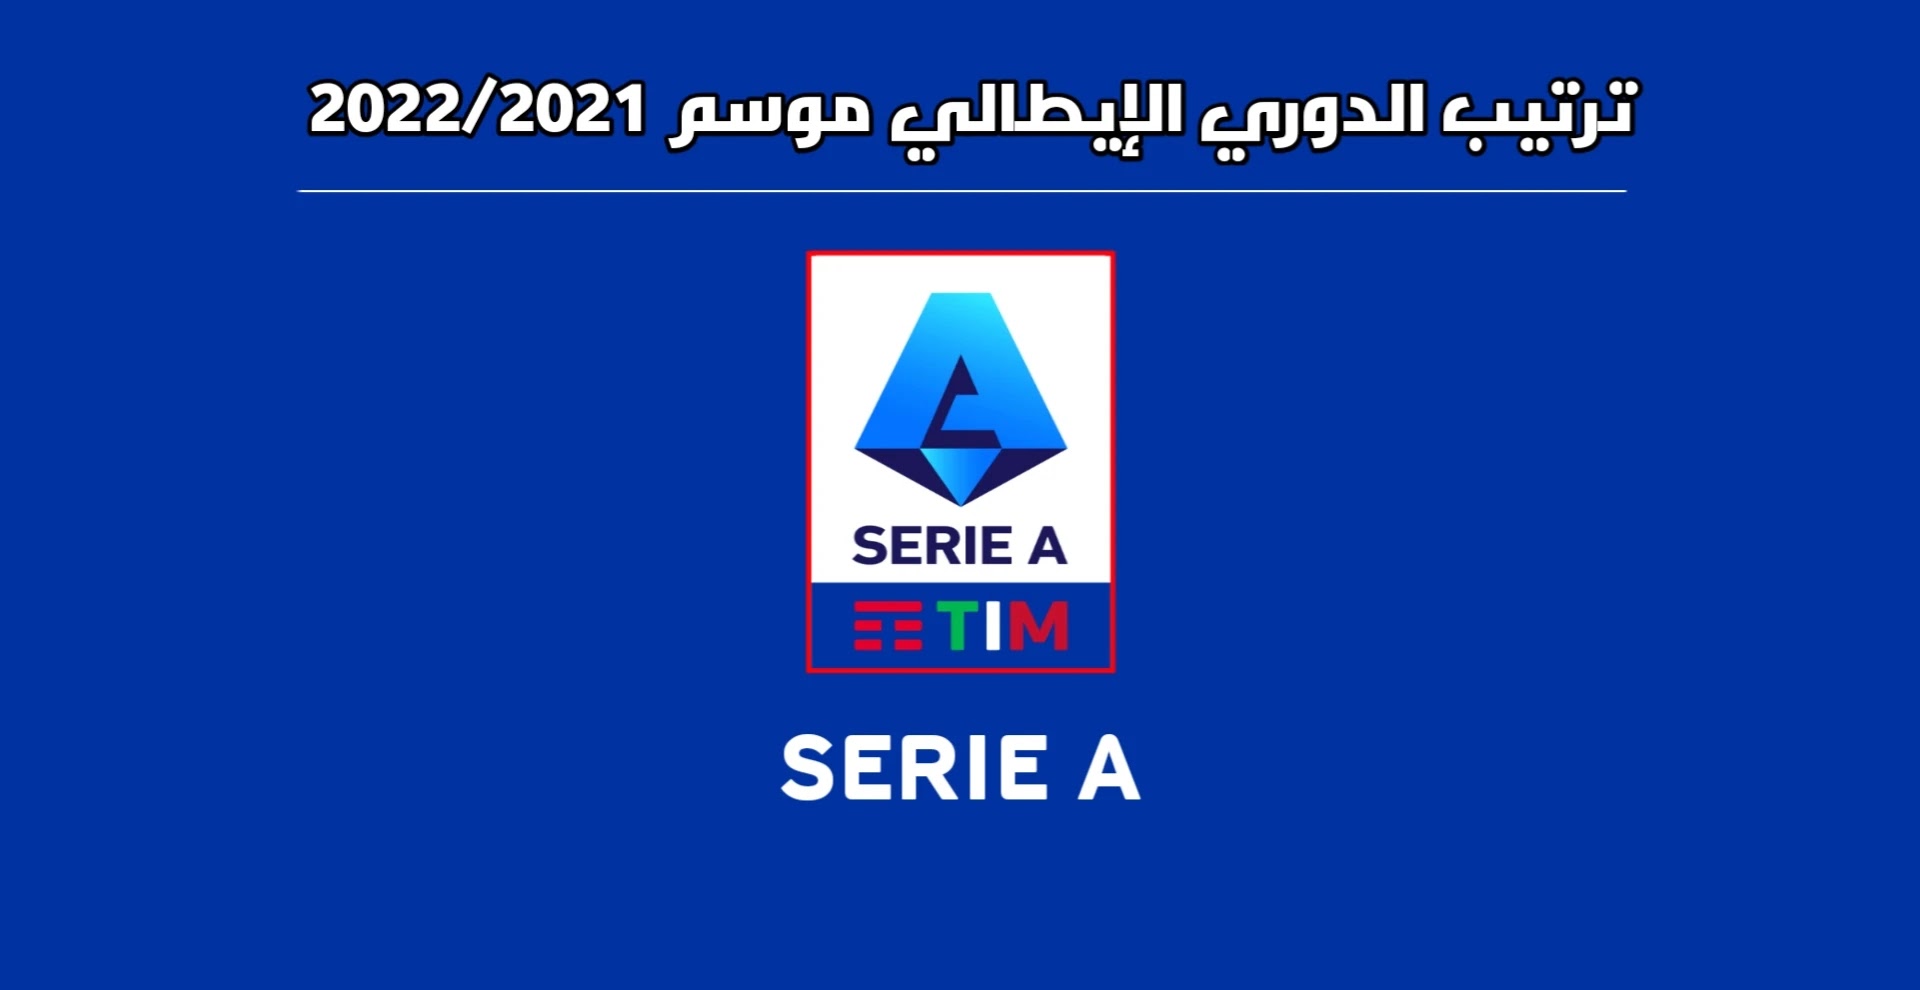 Classement Serie A 2022/2021